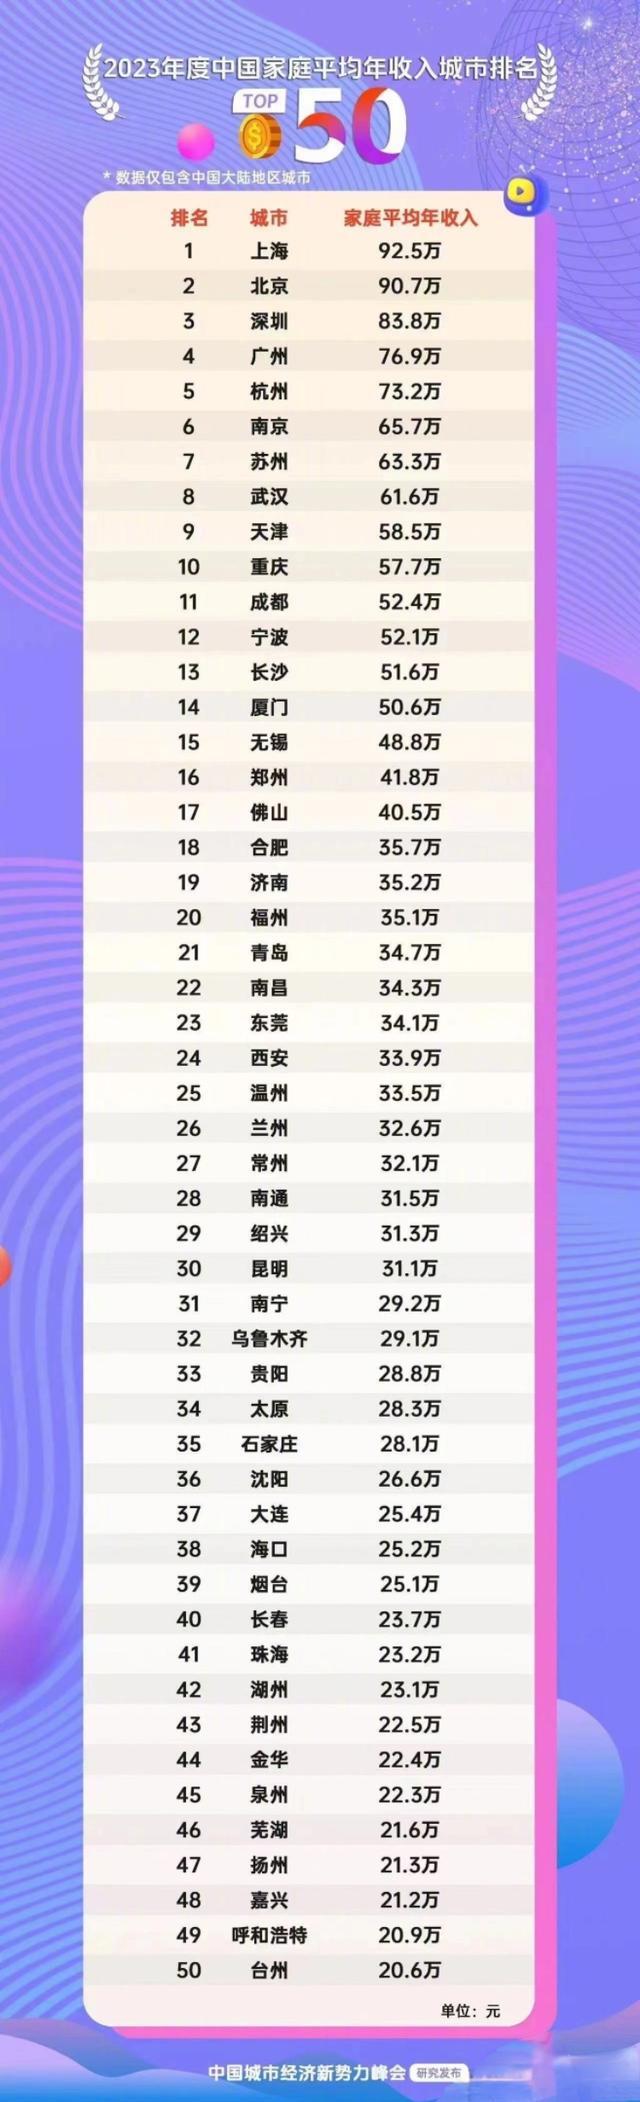 统计局辟谣“中国家庭平均年收入榜”上海92.5万居首